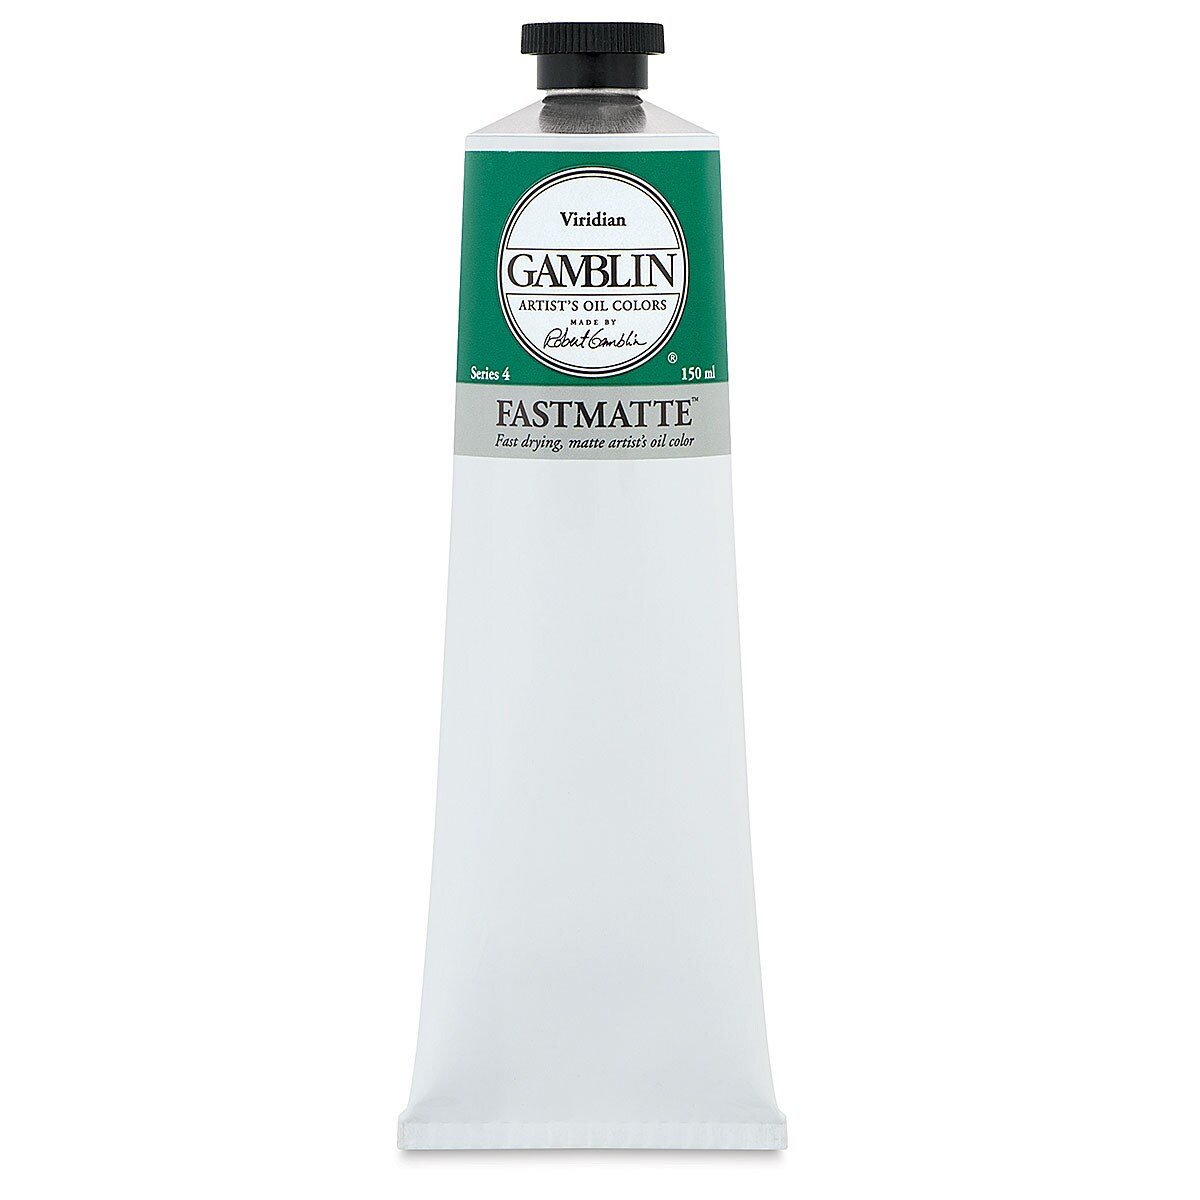 Gamblin FastMatte Alkyd Oil Color - Viridian, 150 ml tube